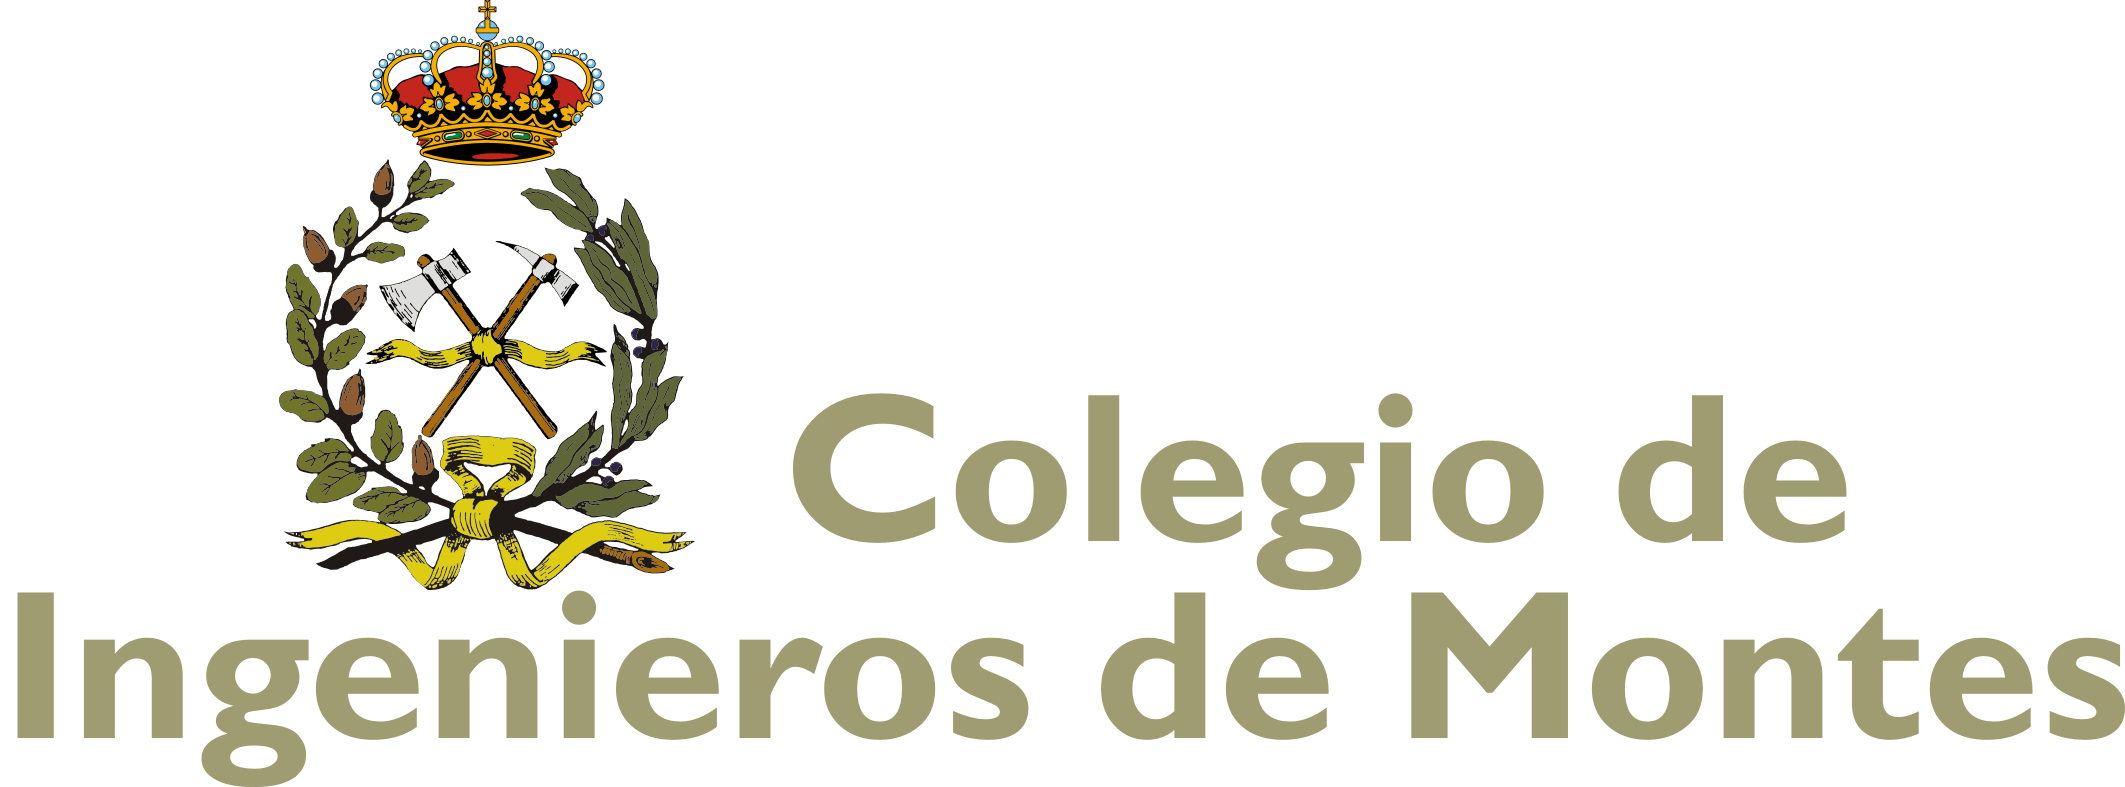 Logotipo del Colegio de Ingenieros de Montes